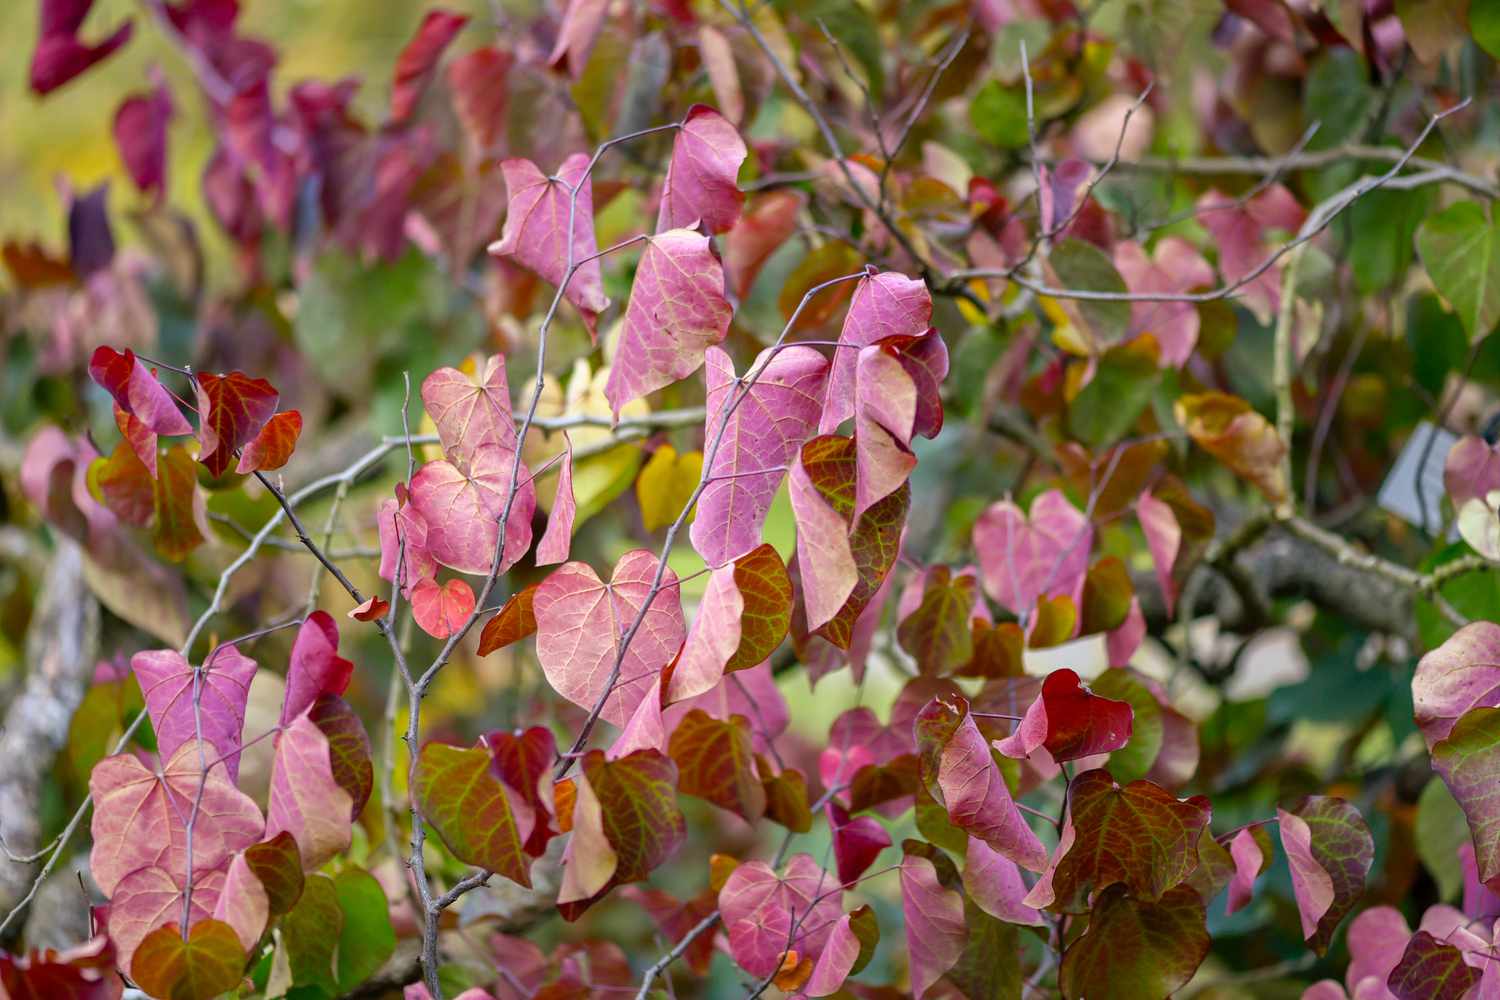 Ramas del árbol redbud pansy del bosque con hojas rosadas en forma de corazón colgando